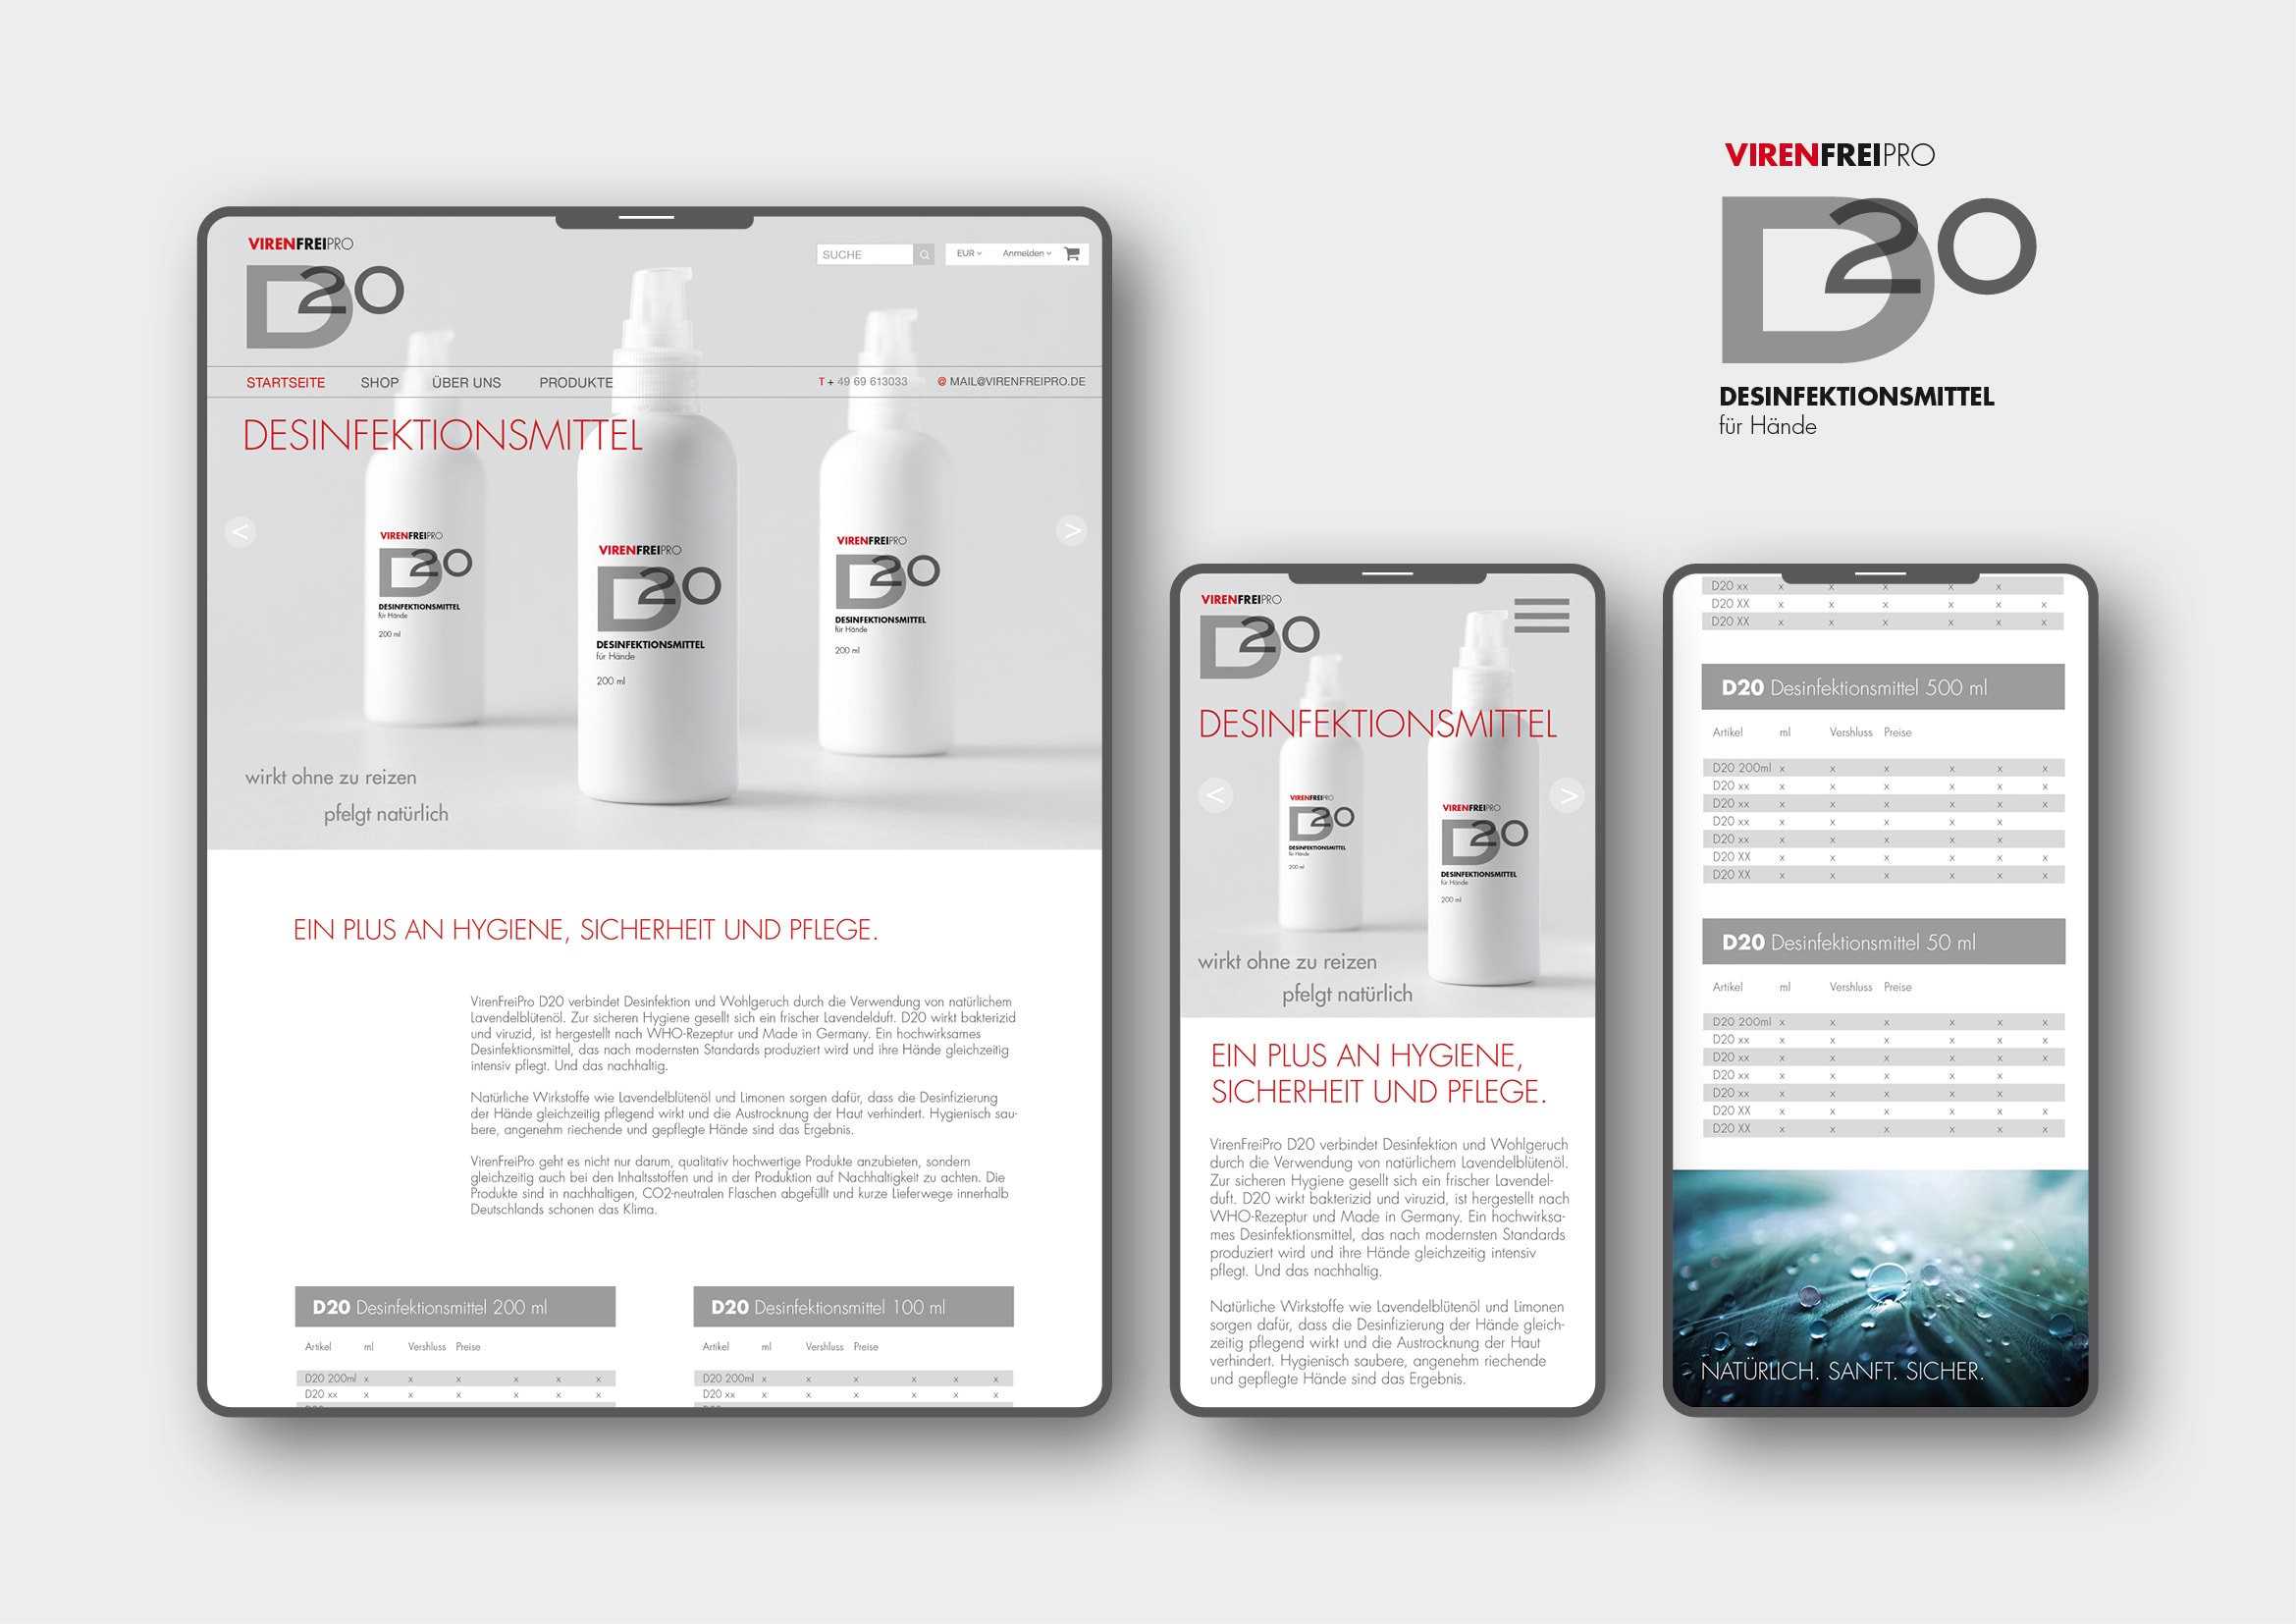 Logodesign und Webdesign Entwicklung Onlineshop für Desinfektionsmittel VirenfreiPro